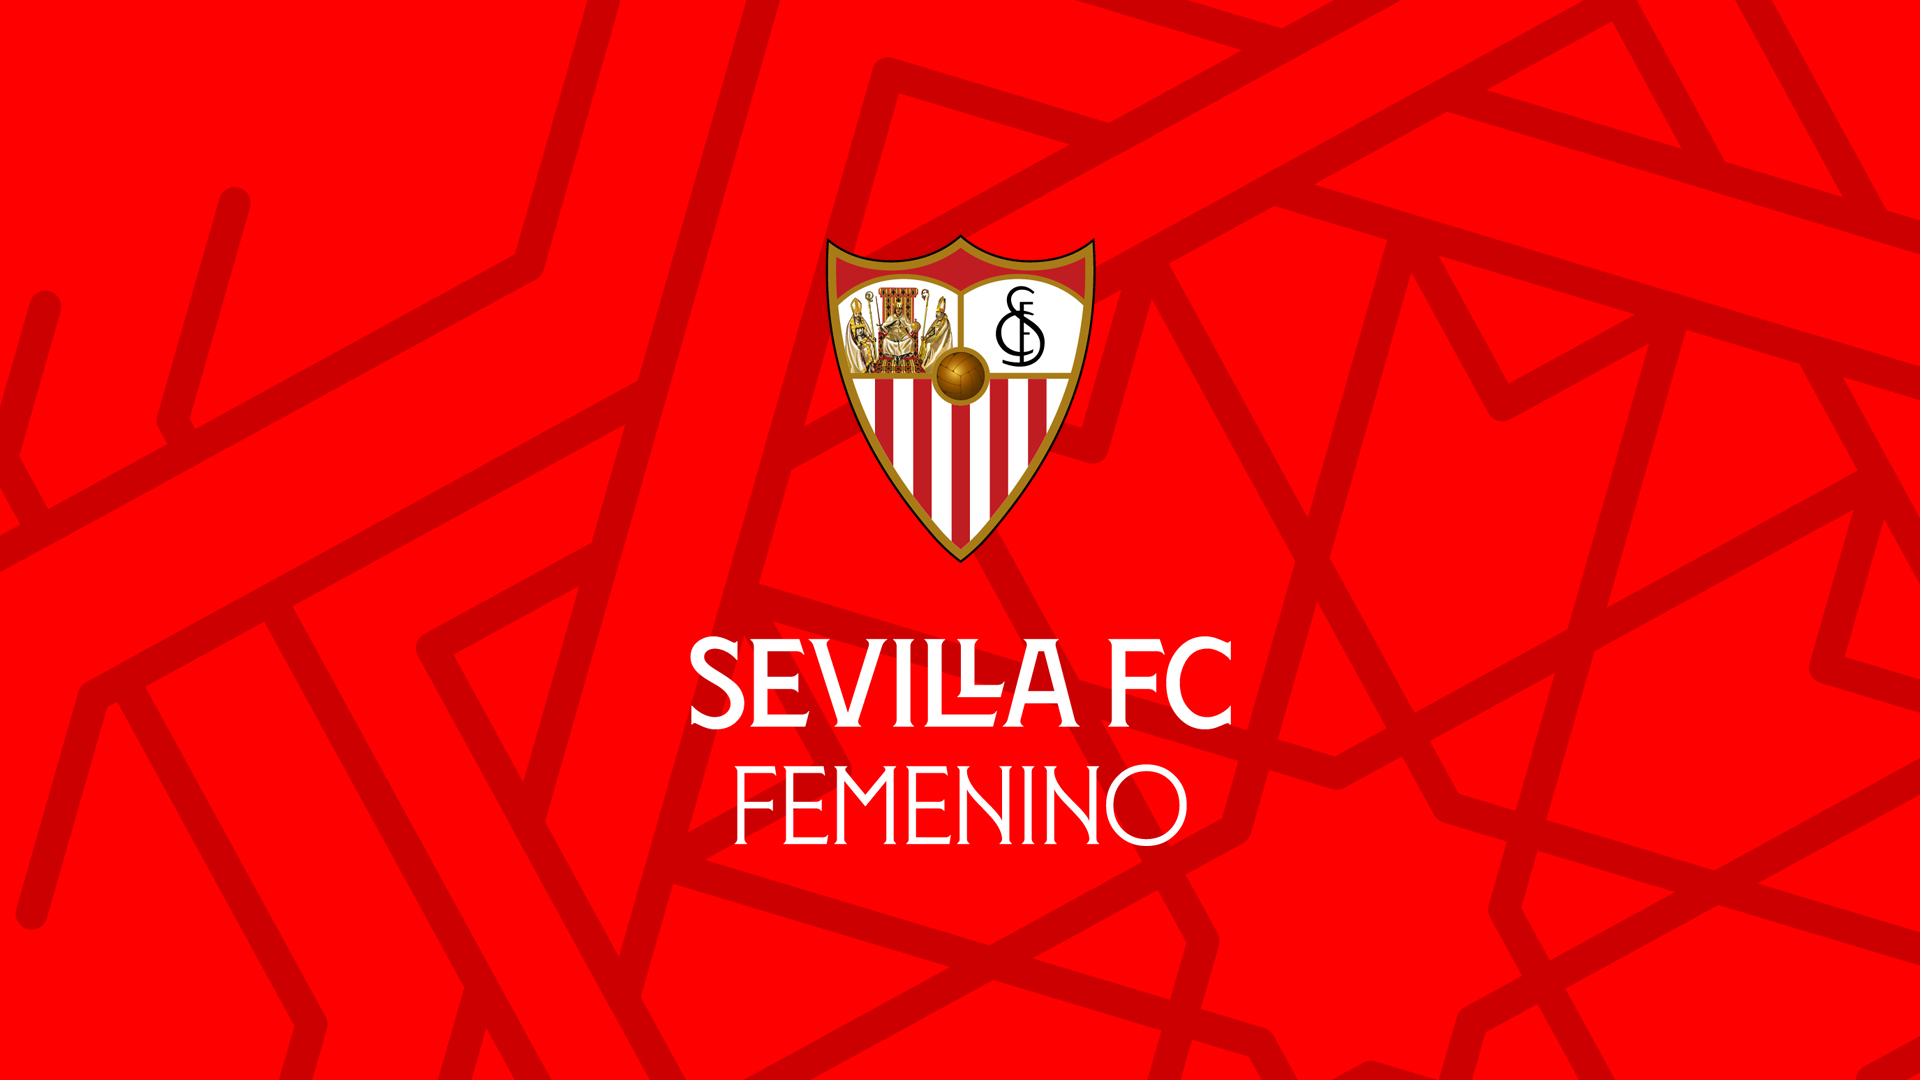 Registration for members opens for Sevilla FC Femenino-Villarreal CF